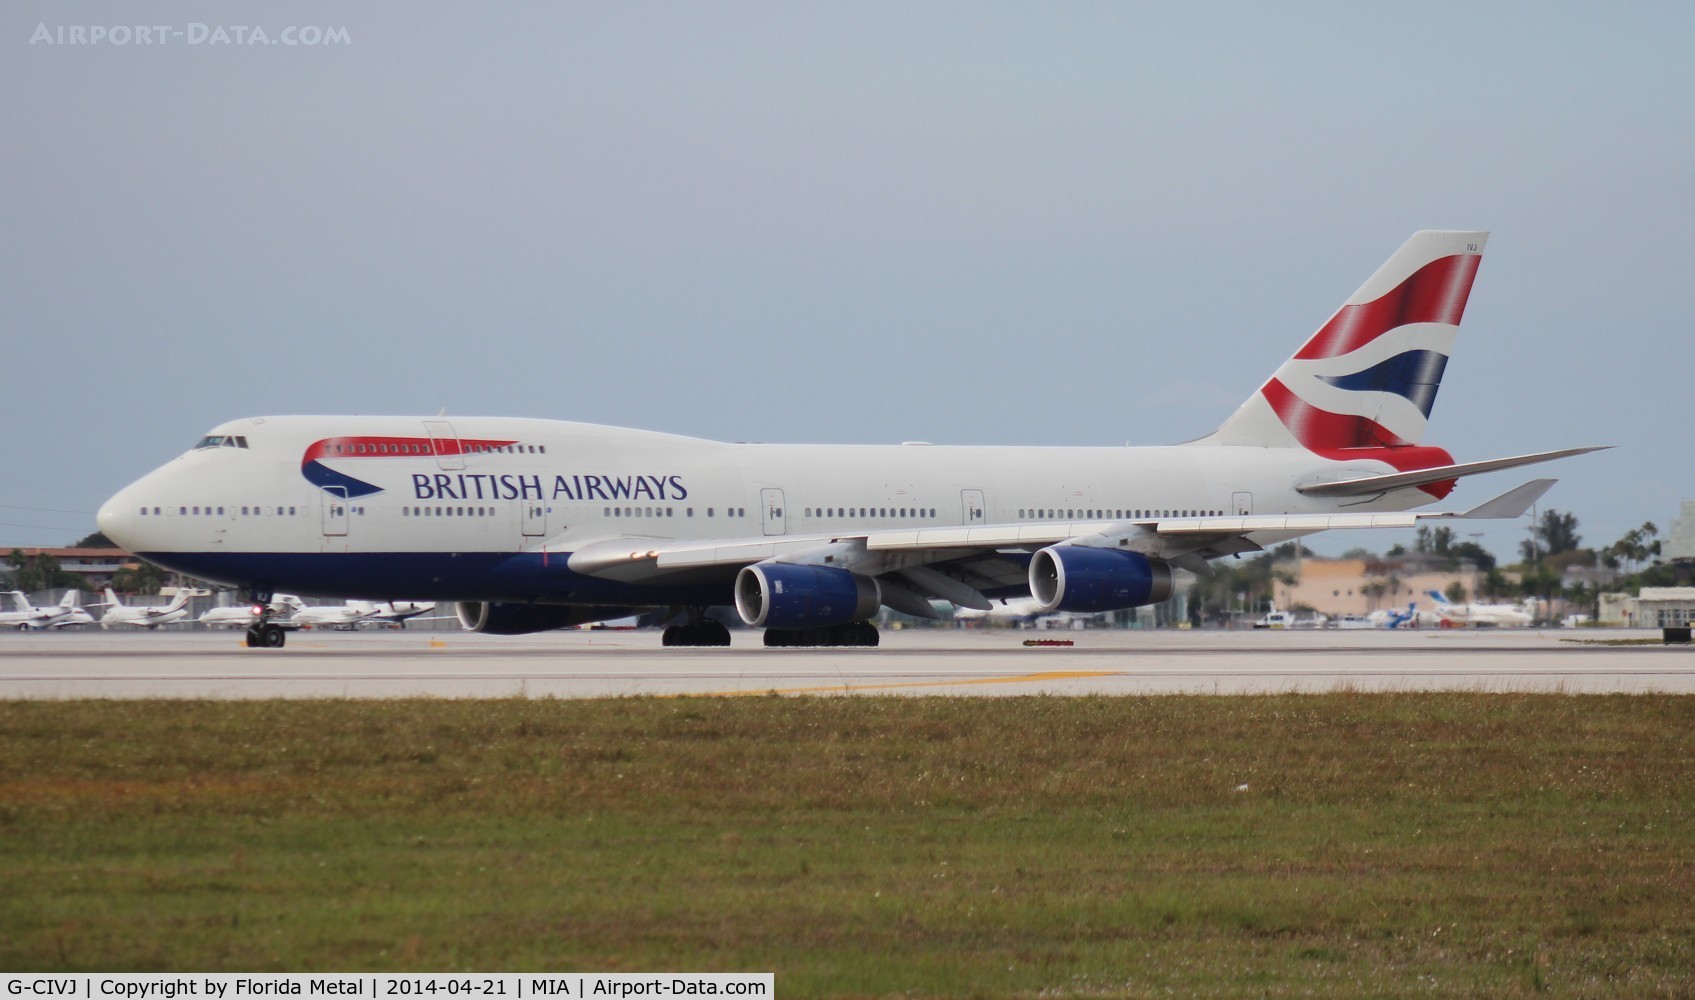 G-CIVJ, 1997 Boeing 747-436 C/N 25817, British Airways 747-400